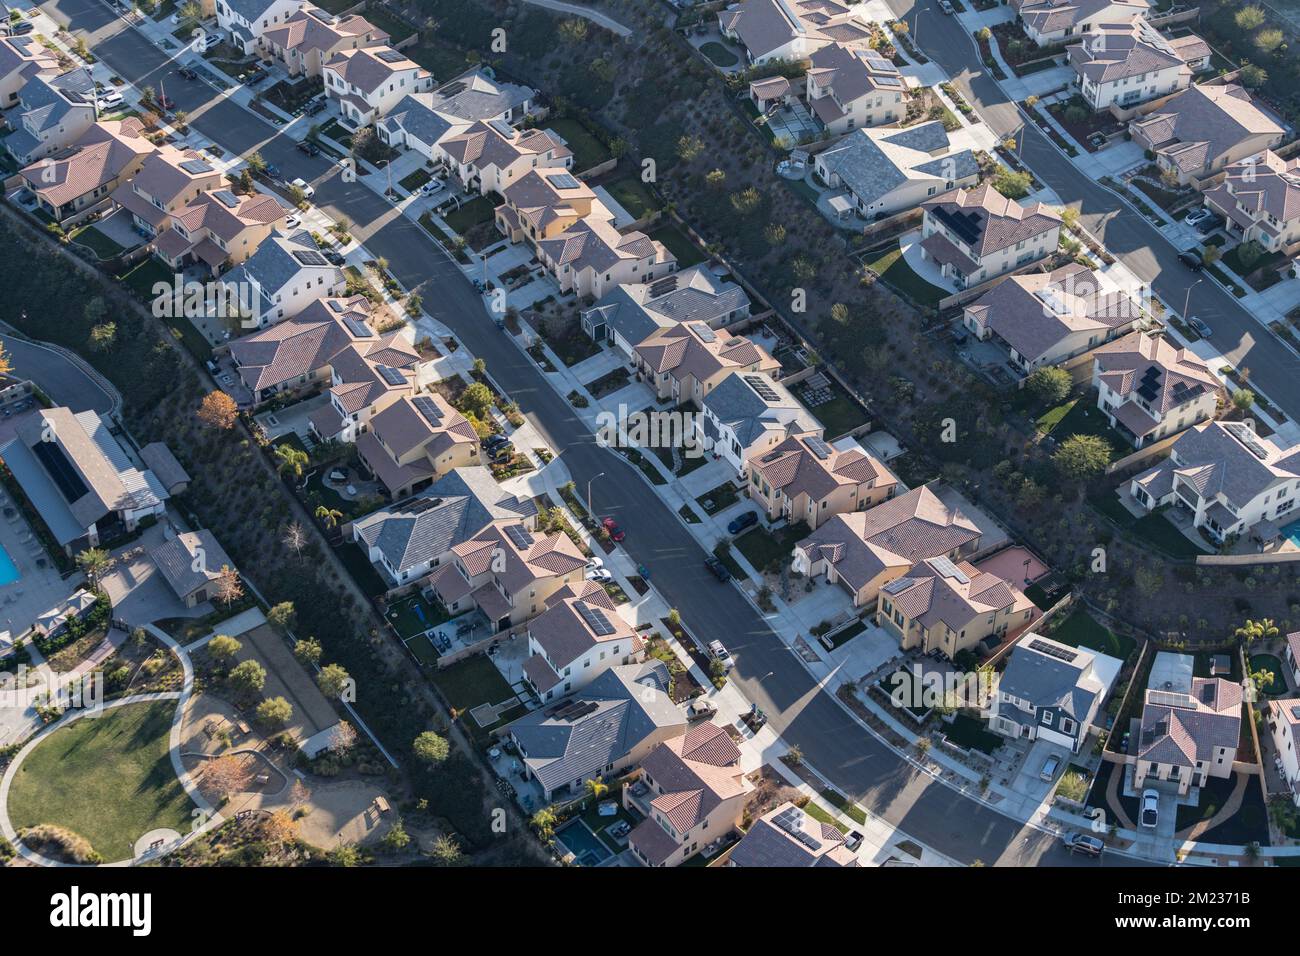 Aerial view of modern suburban neighborhood sprawl. Stock Photo